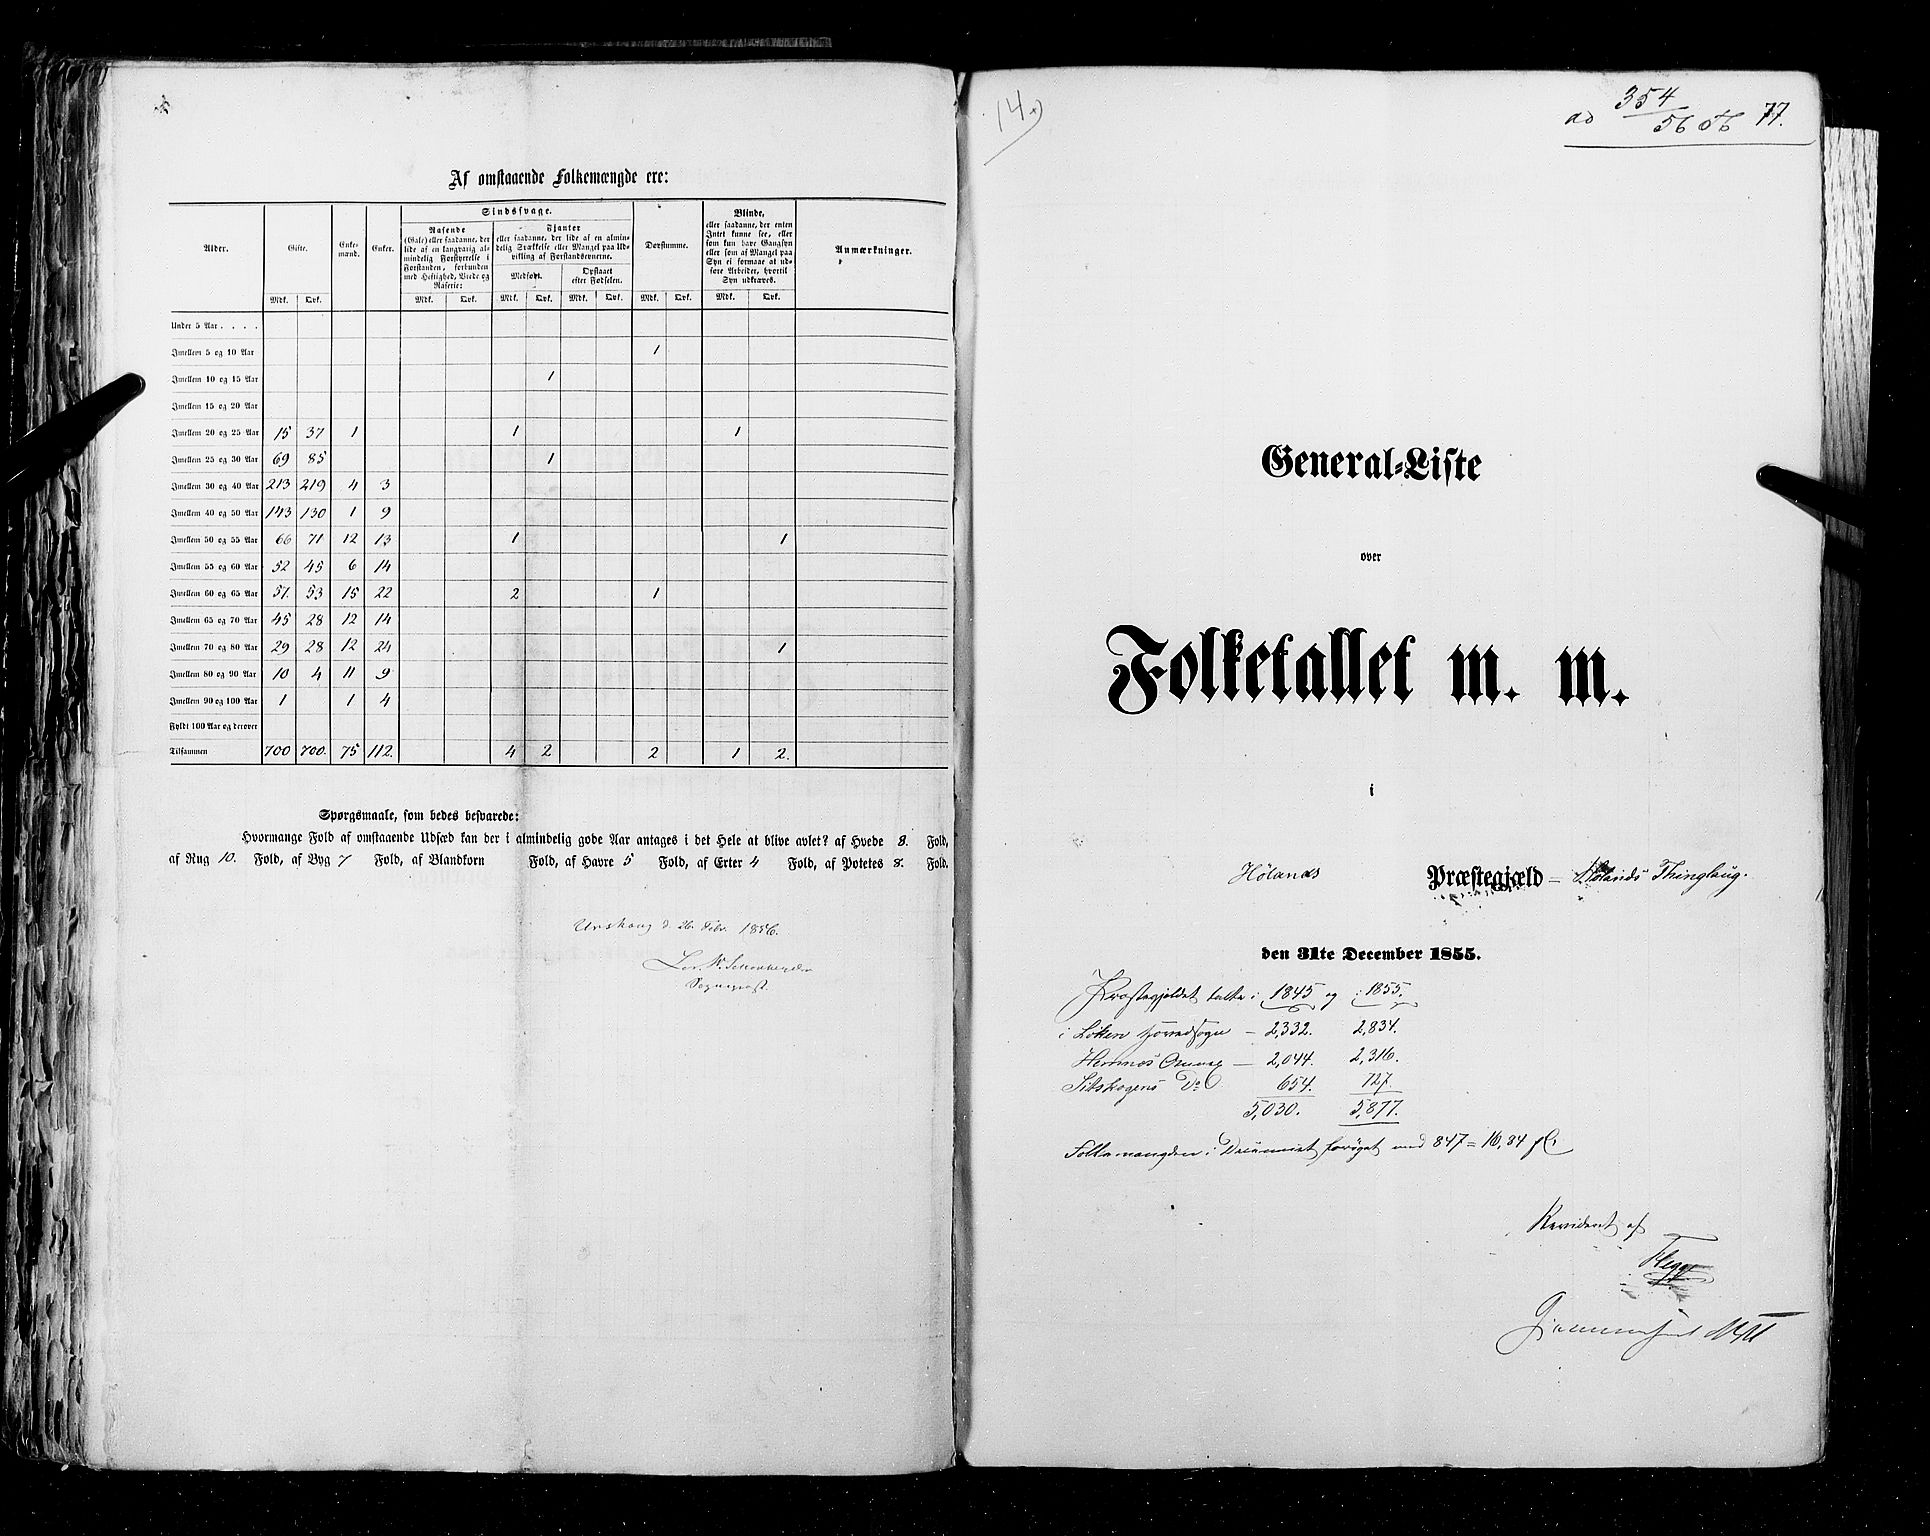 RA, Folketellingen 1855, bind 1: Akershus amt, Smålenenes amt og Hedemarken amt, 1855, s. 77